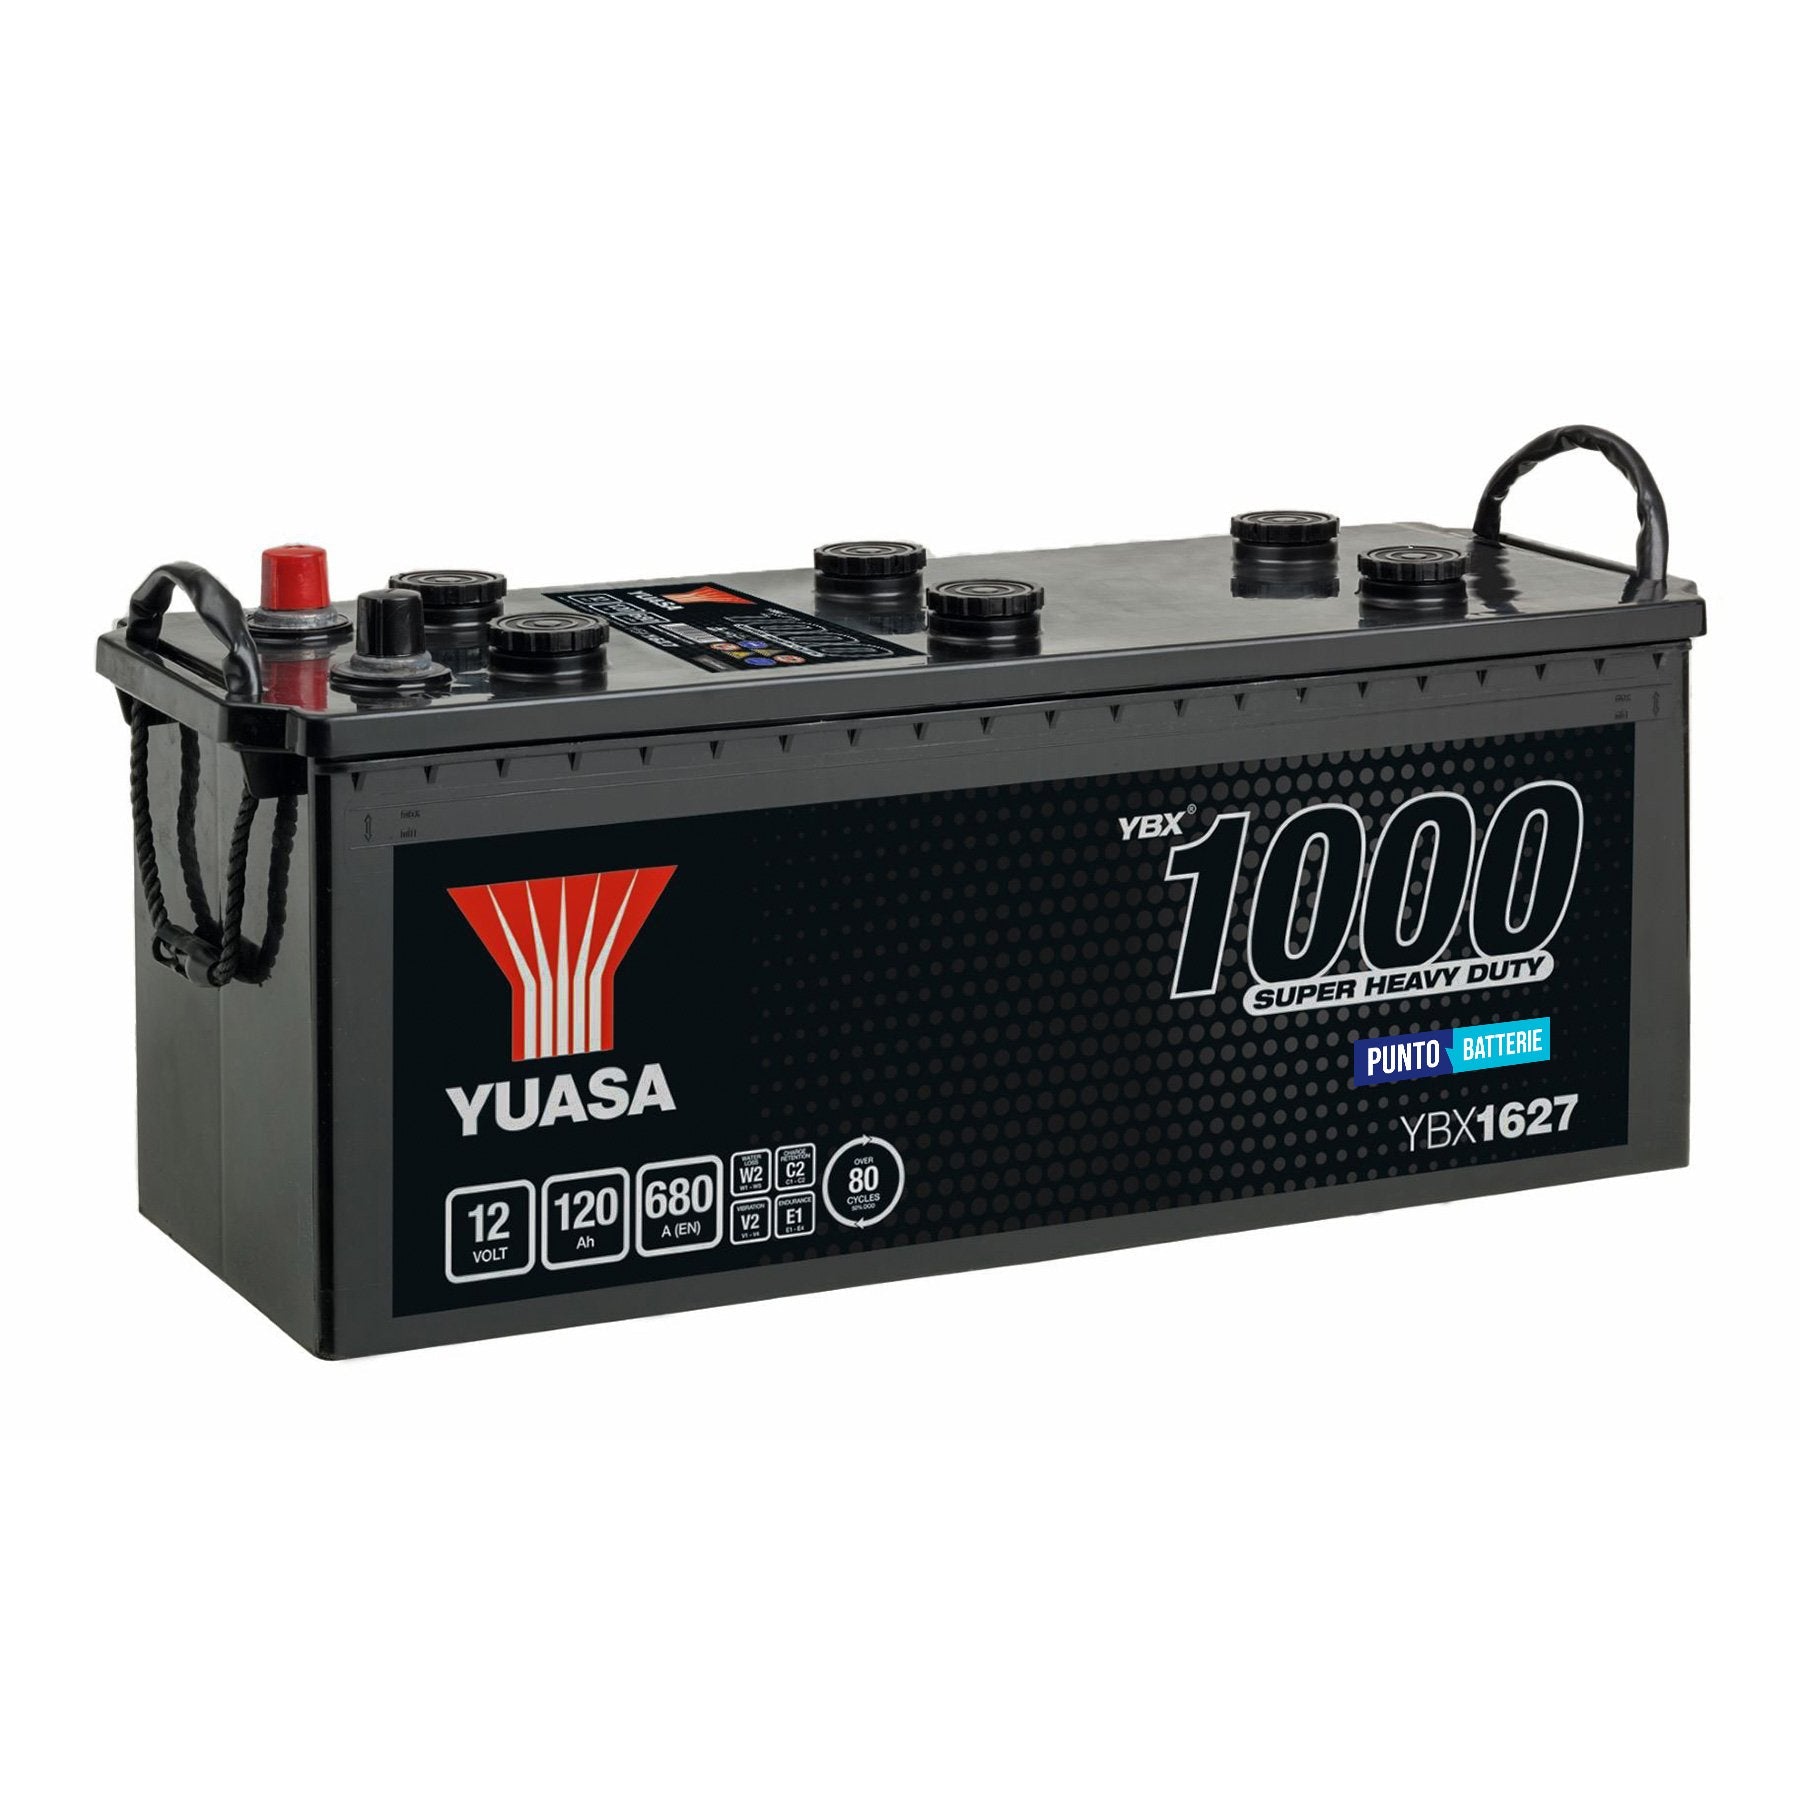 Batteria originale Yuasa YBX1000 YBX1627, dimensioni 513 x 189 x 223, polo positivo a sinistra, 12 volt, 120 amperora, 680 ampere. Batteria per camion e veicoli pesanti.